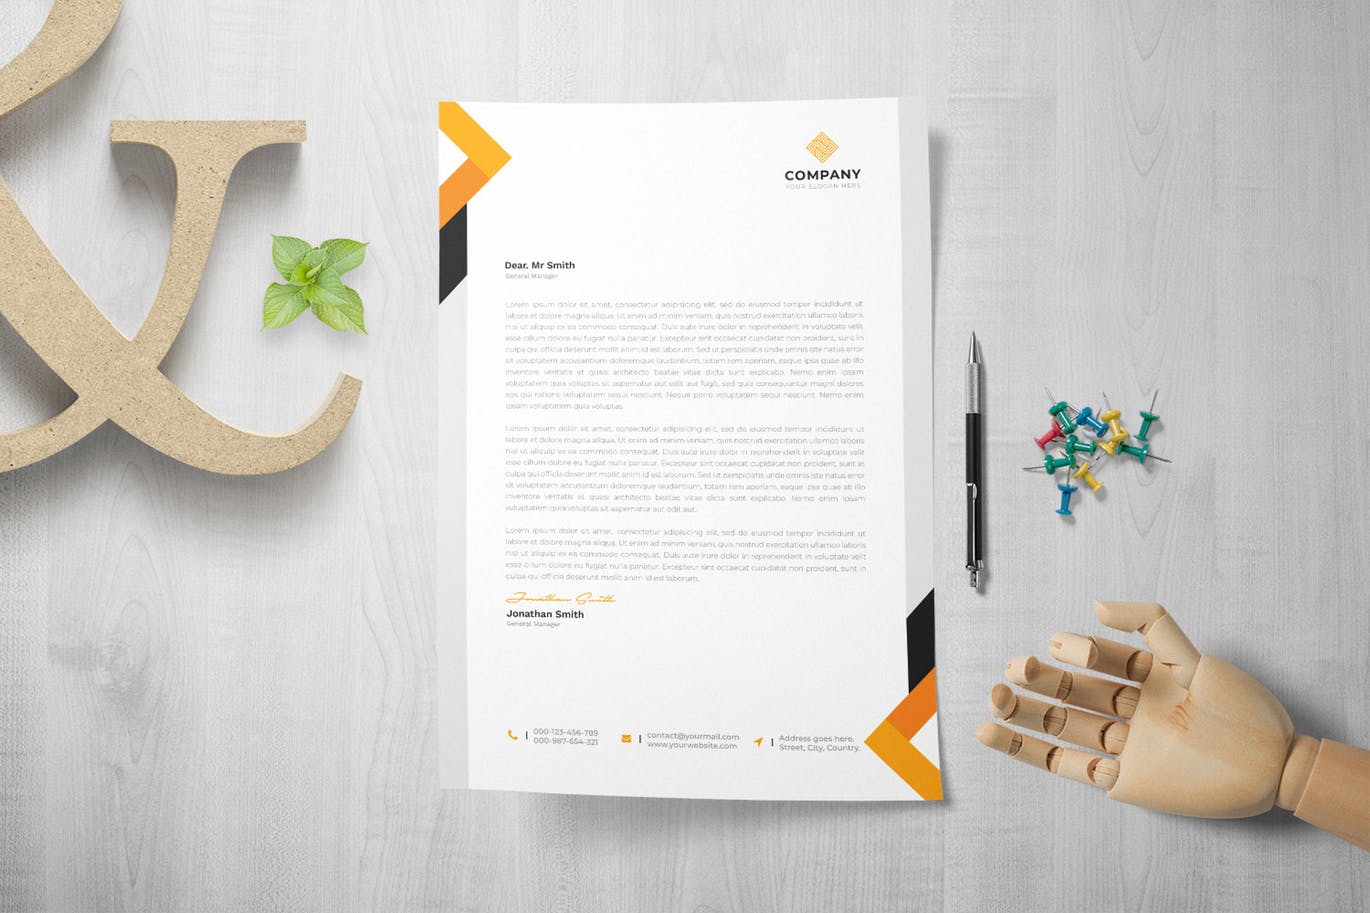 网络科技/技术开发企业信纸排版模板 Letterhead插图3